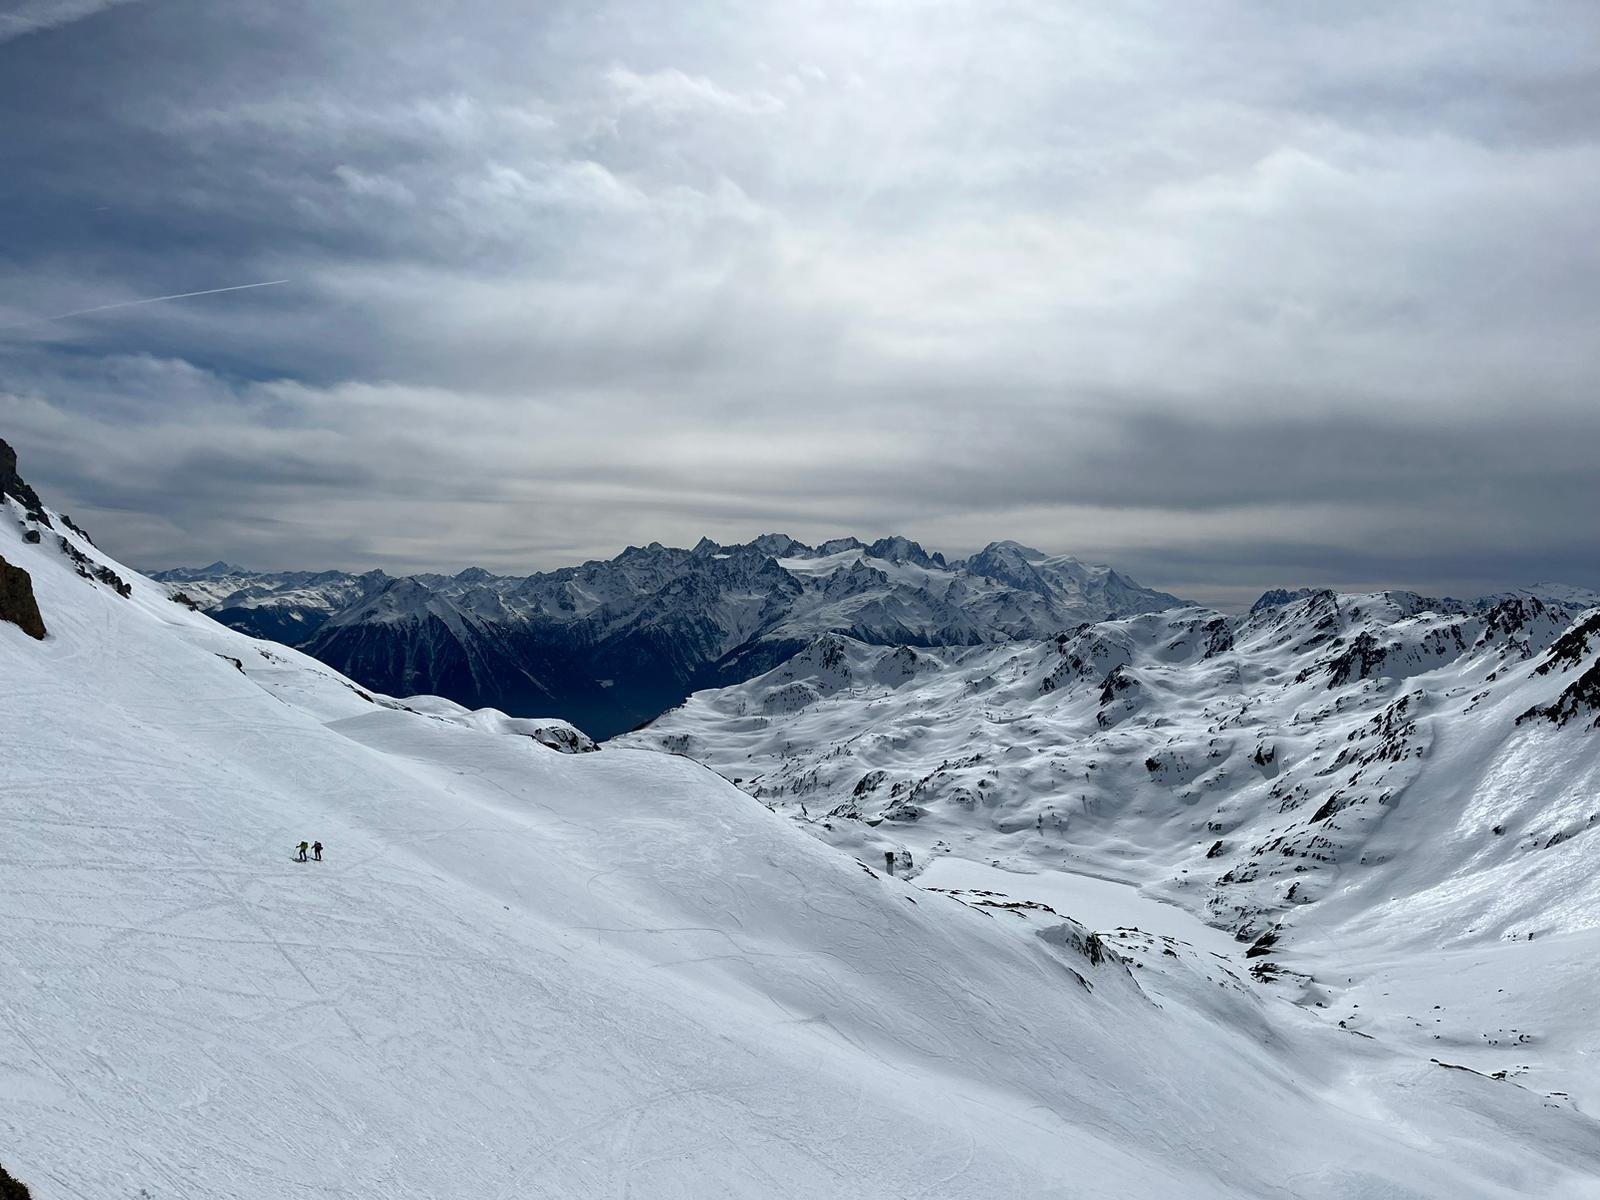 Bilder von Simon Akam. Titelbild: Seine Skitourengruppe in der Diavolezza. Unten: Seine Skitourenwoche mit bergpunkt in Ovronaz.